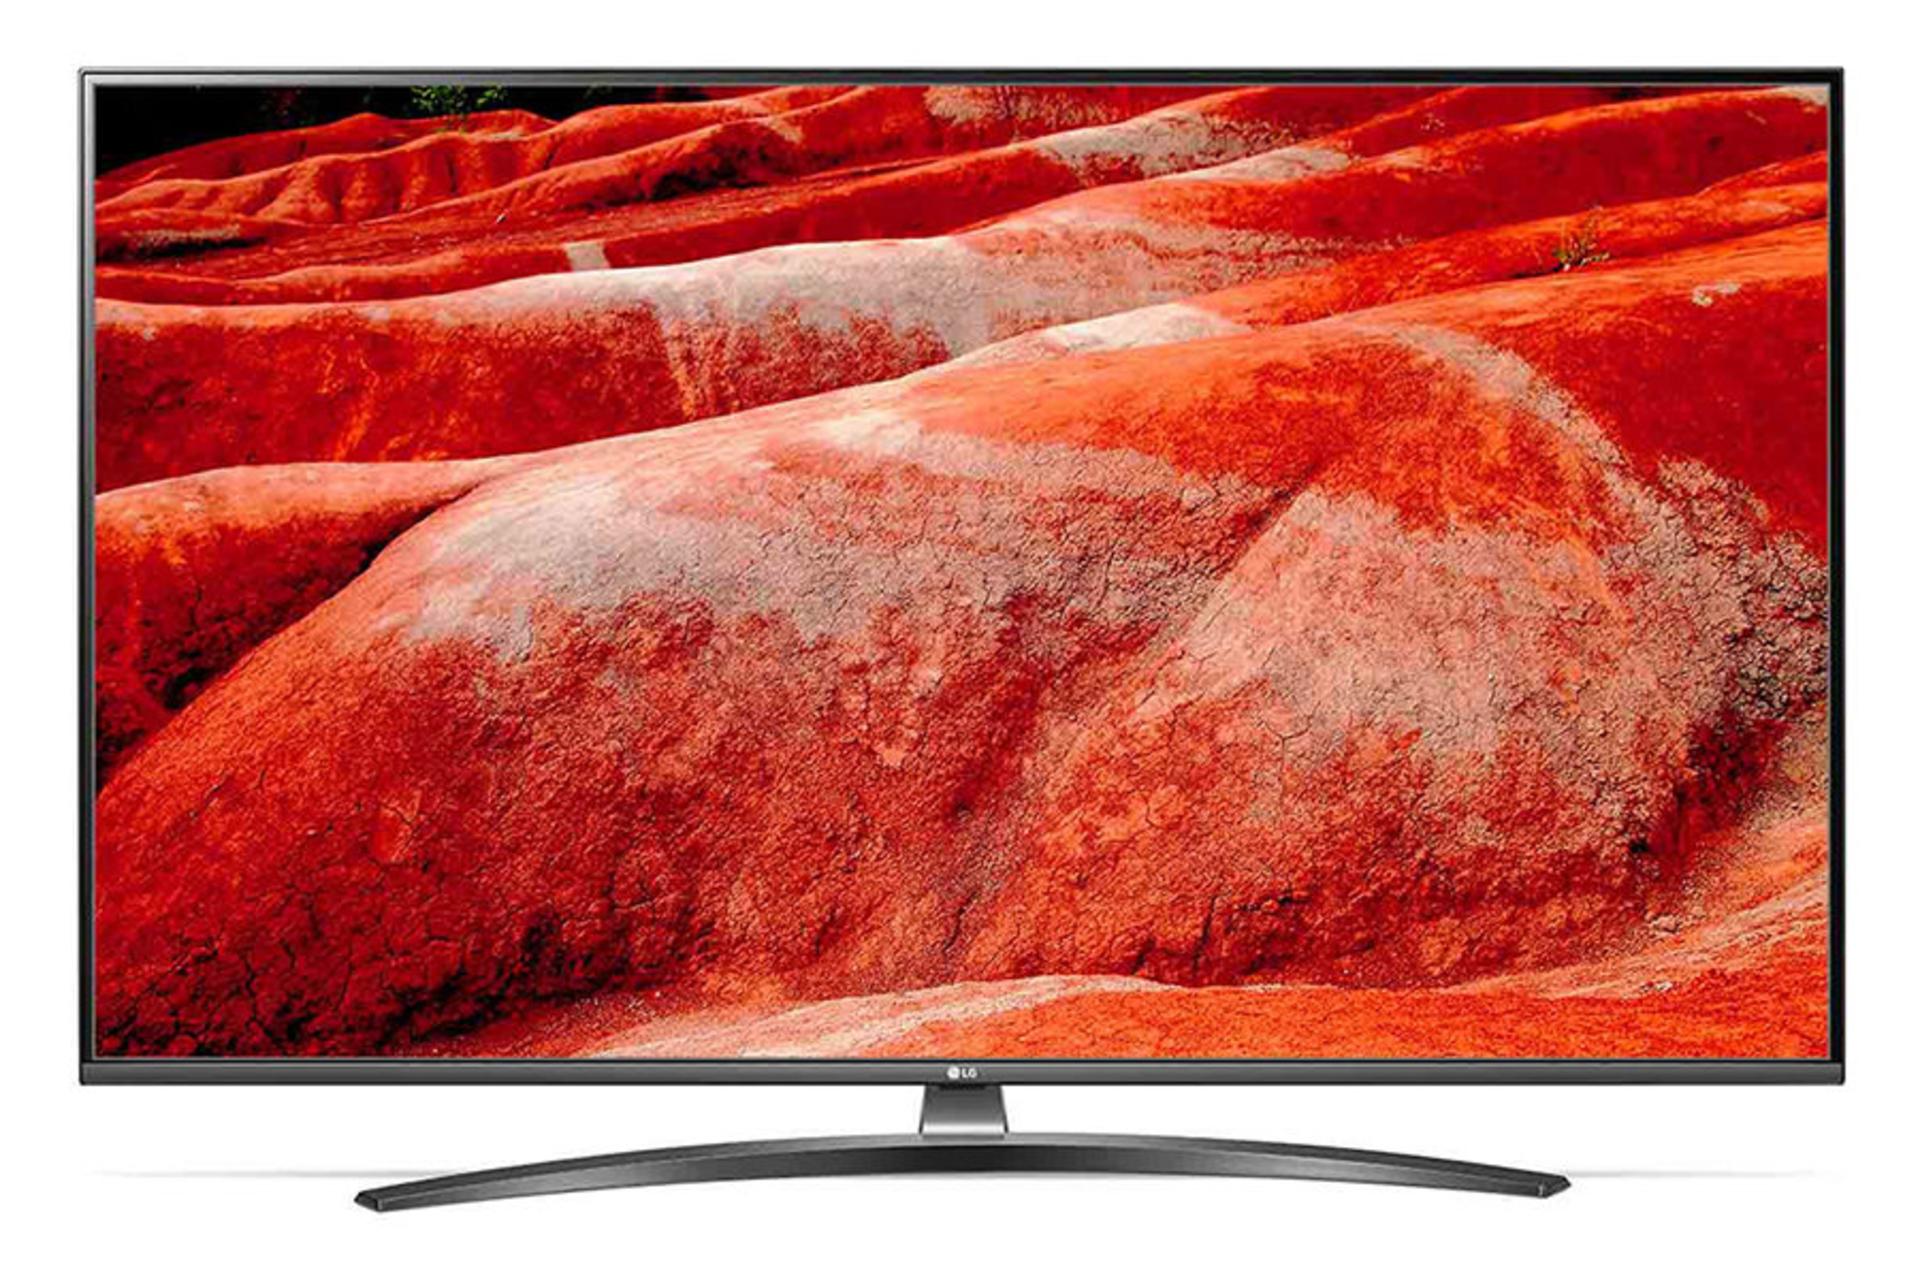 نمای جلو تلویزیون ال جی UM7660 مدل 55 اینچ با صفحه روشن